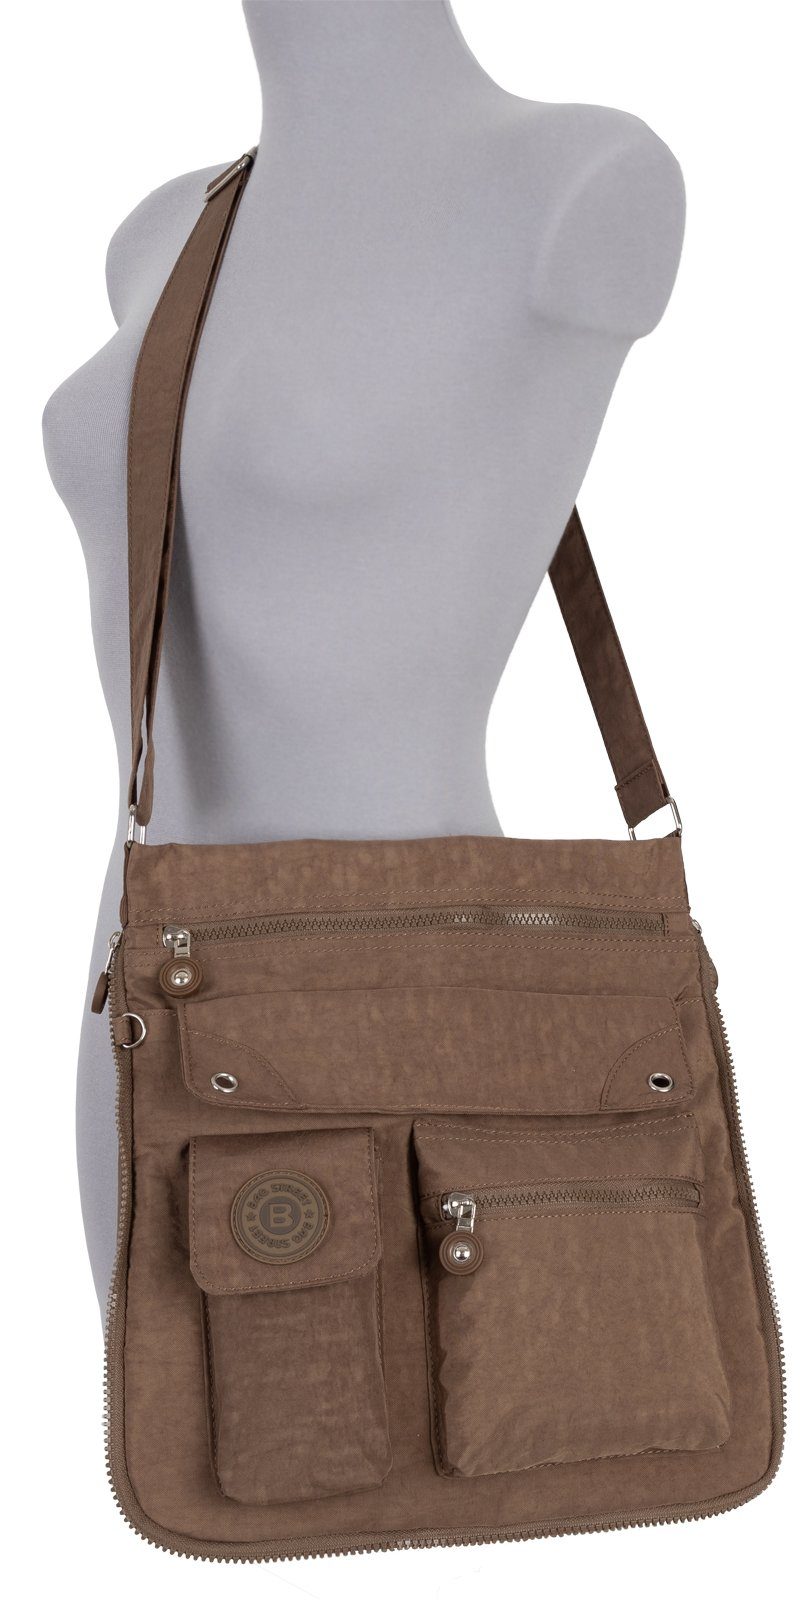 BAG STREET Schlüsseltasche Schultertasche Schultertasche, Damentasche tragbar als Handtasche Umhängetasche Braun Schwarz, Umhängetasche